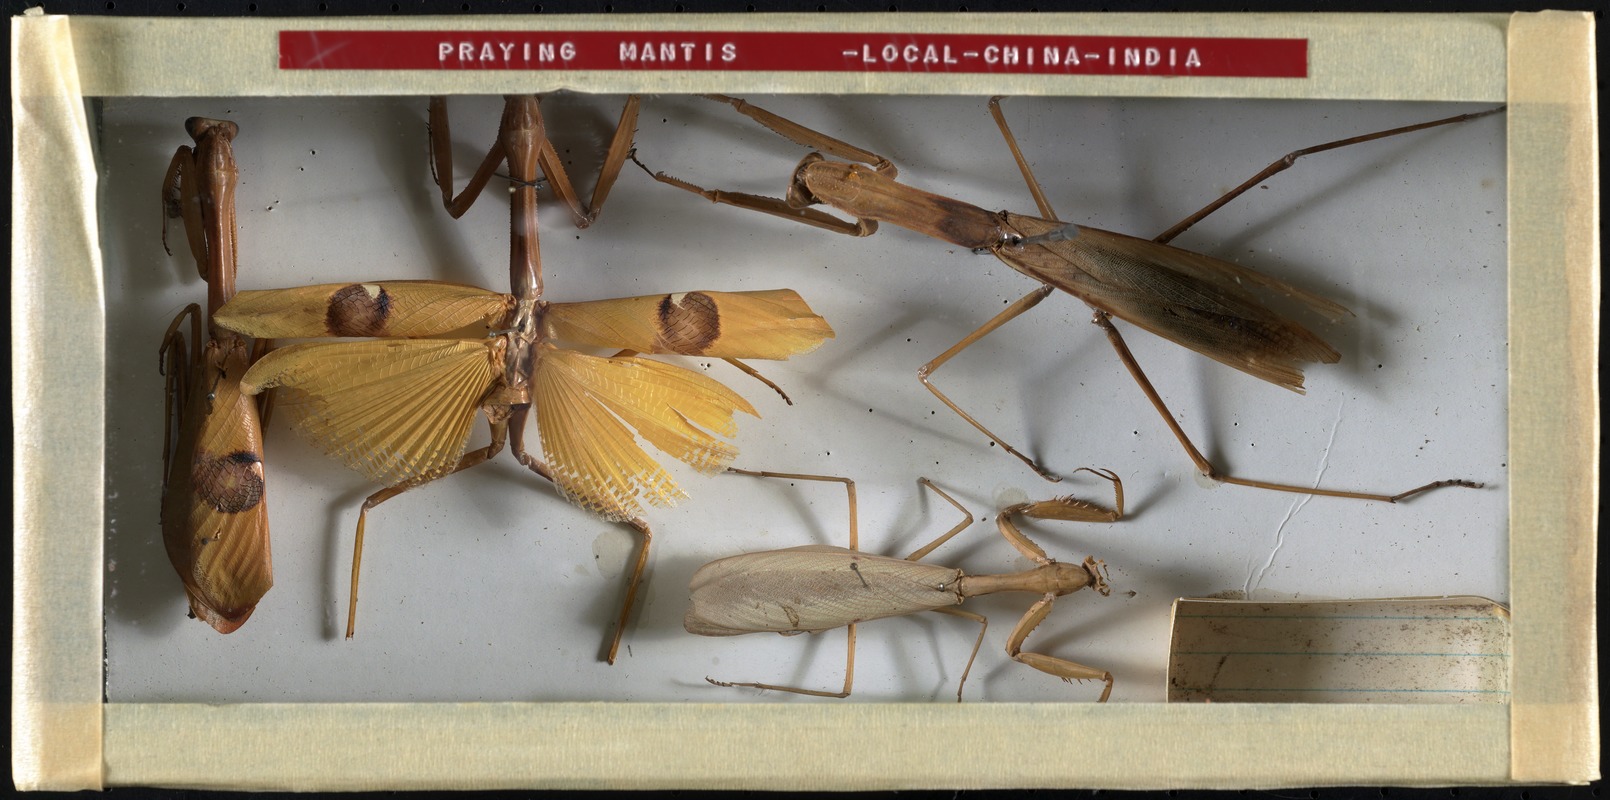 Praying mantis - local - China - India